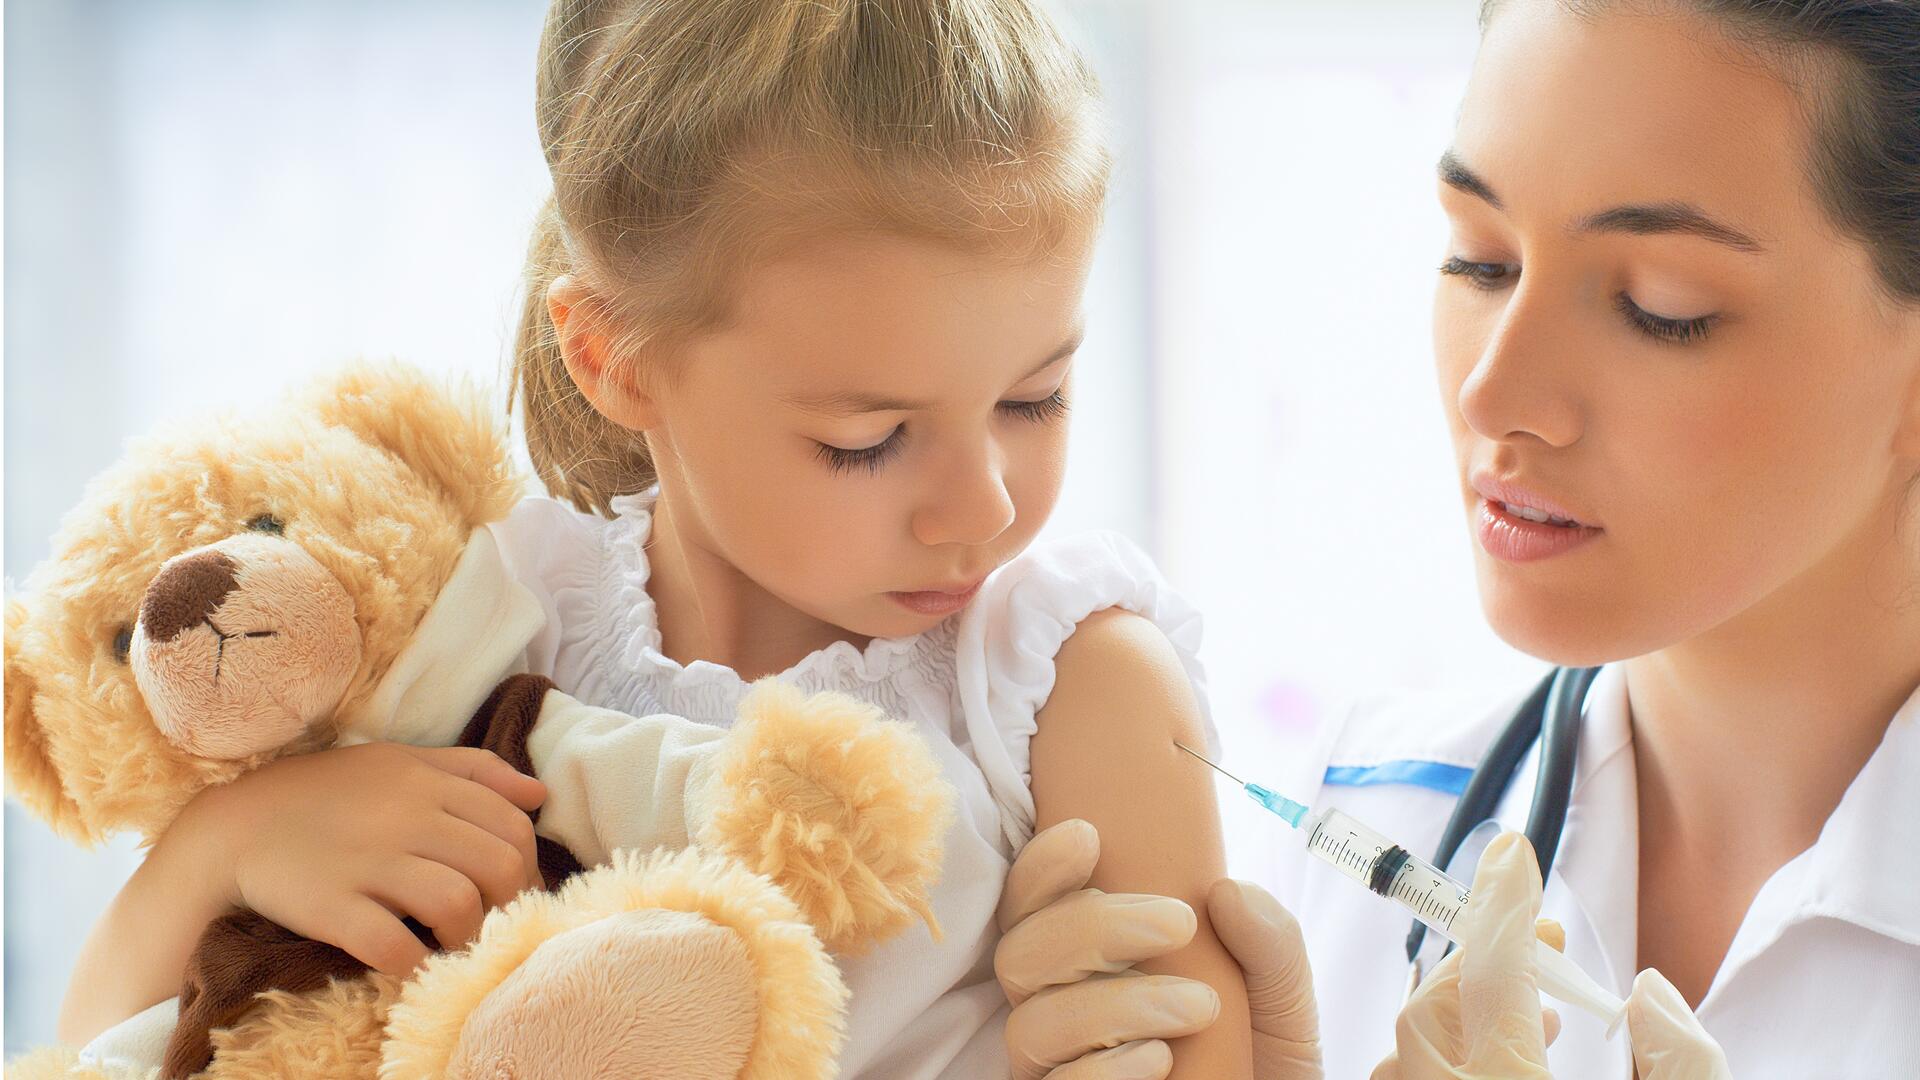 Kinderärzte raten jetzt zur Grippe-Impfung für Kinder